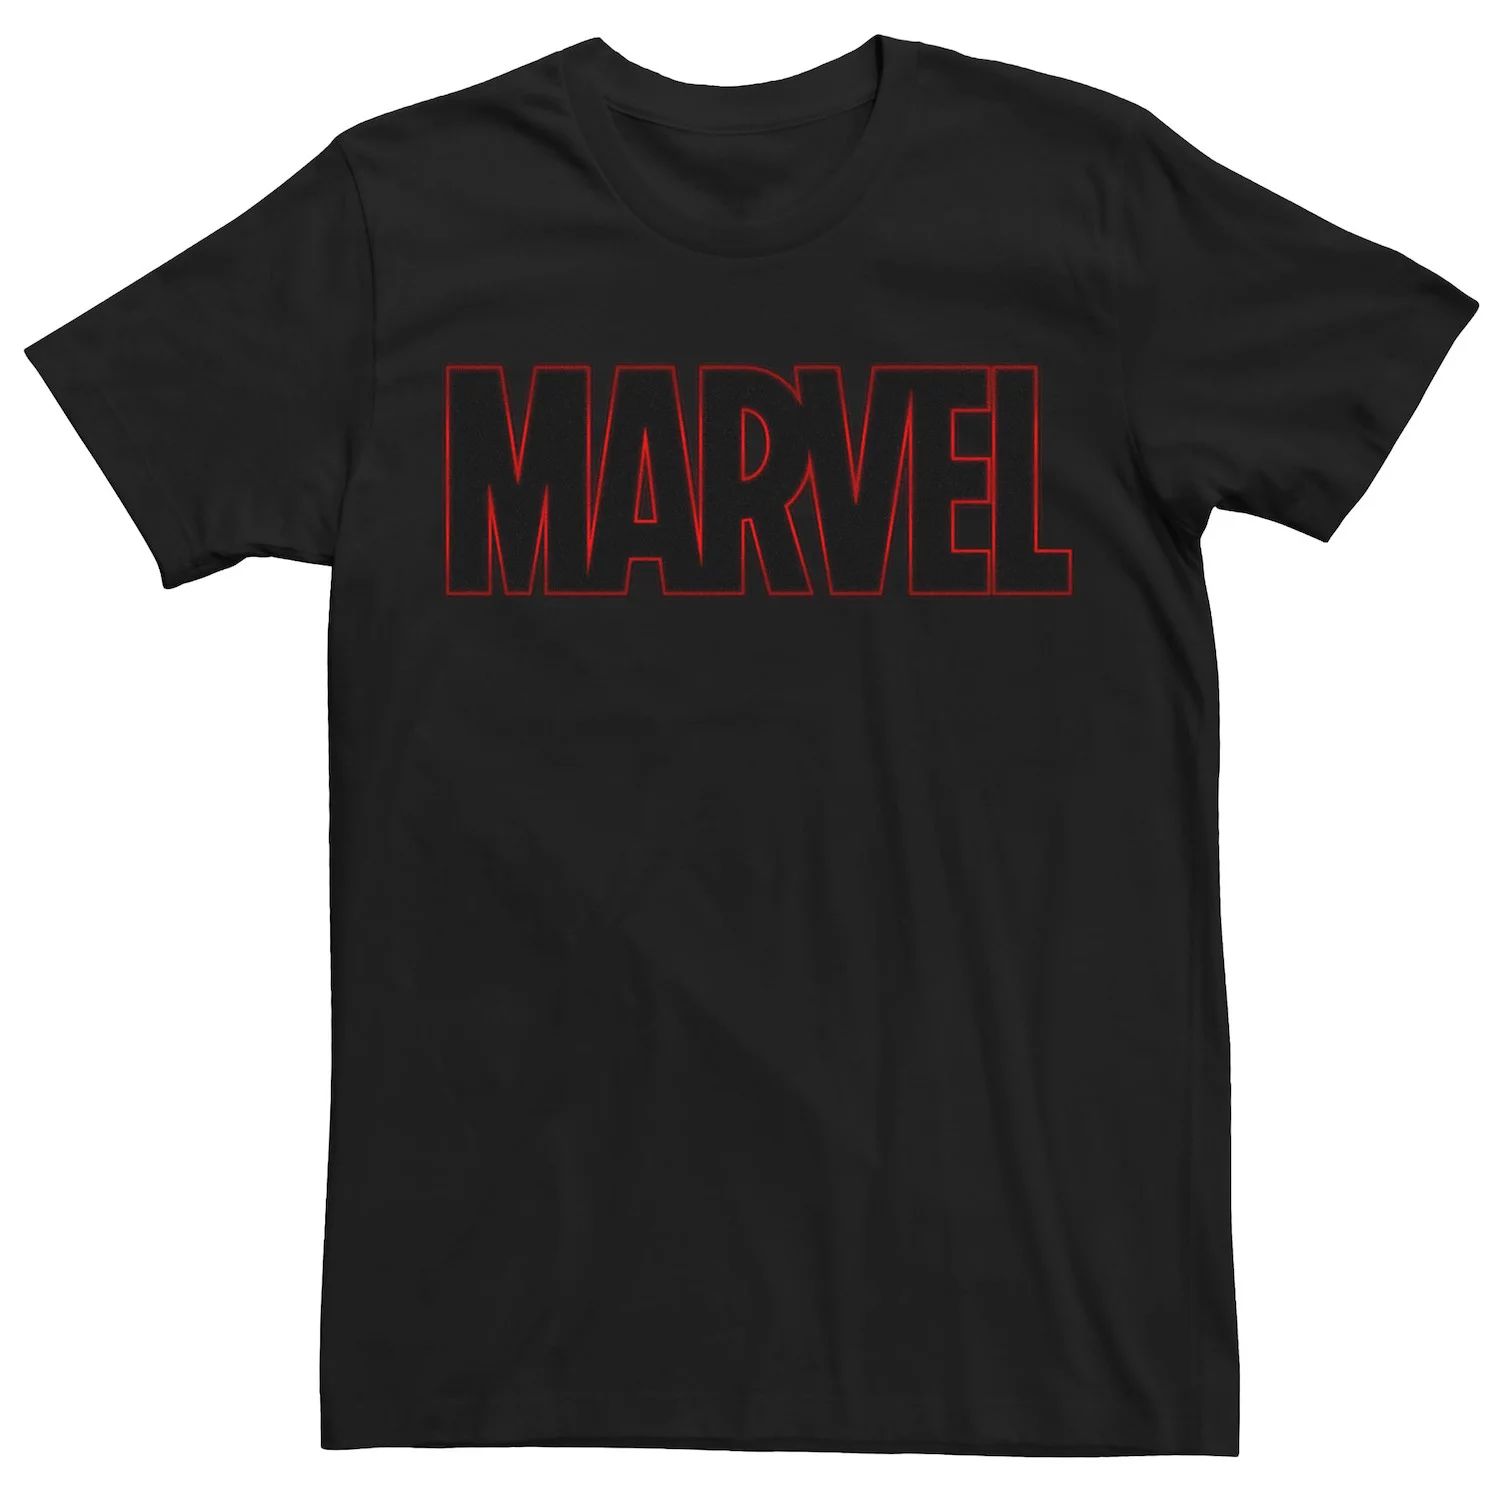 Мужская классическая футболка с графическим логотипом Marvel